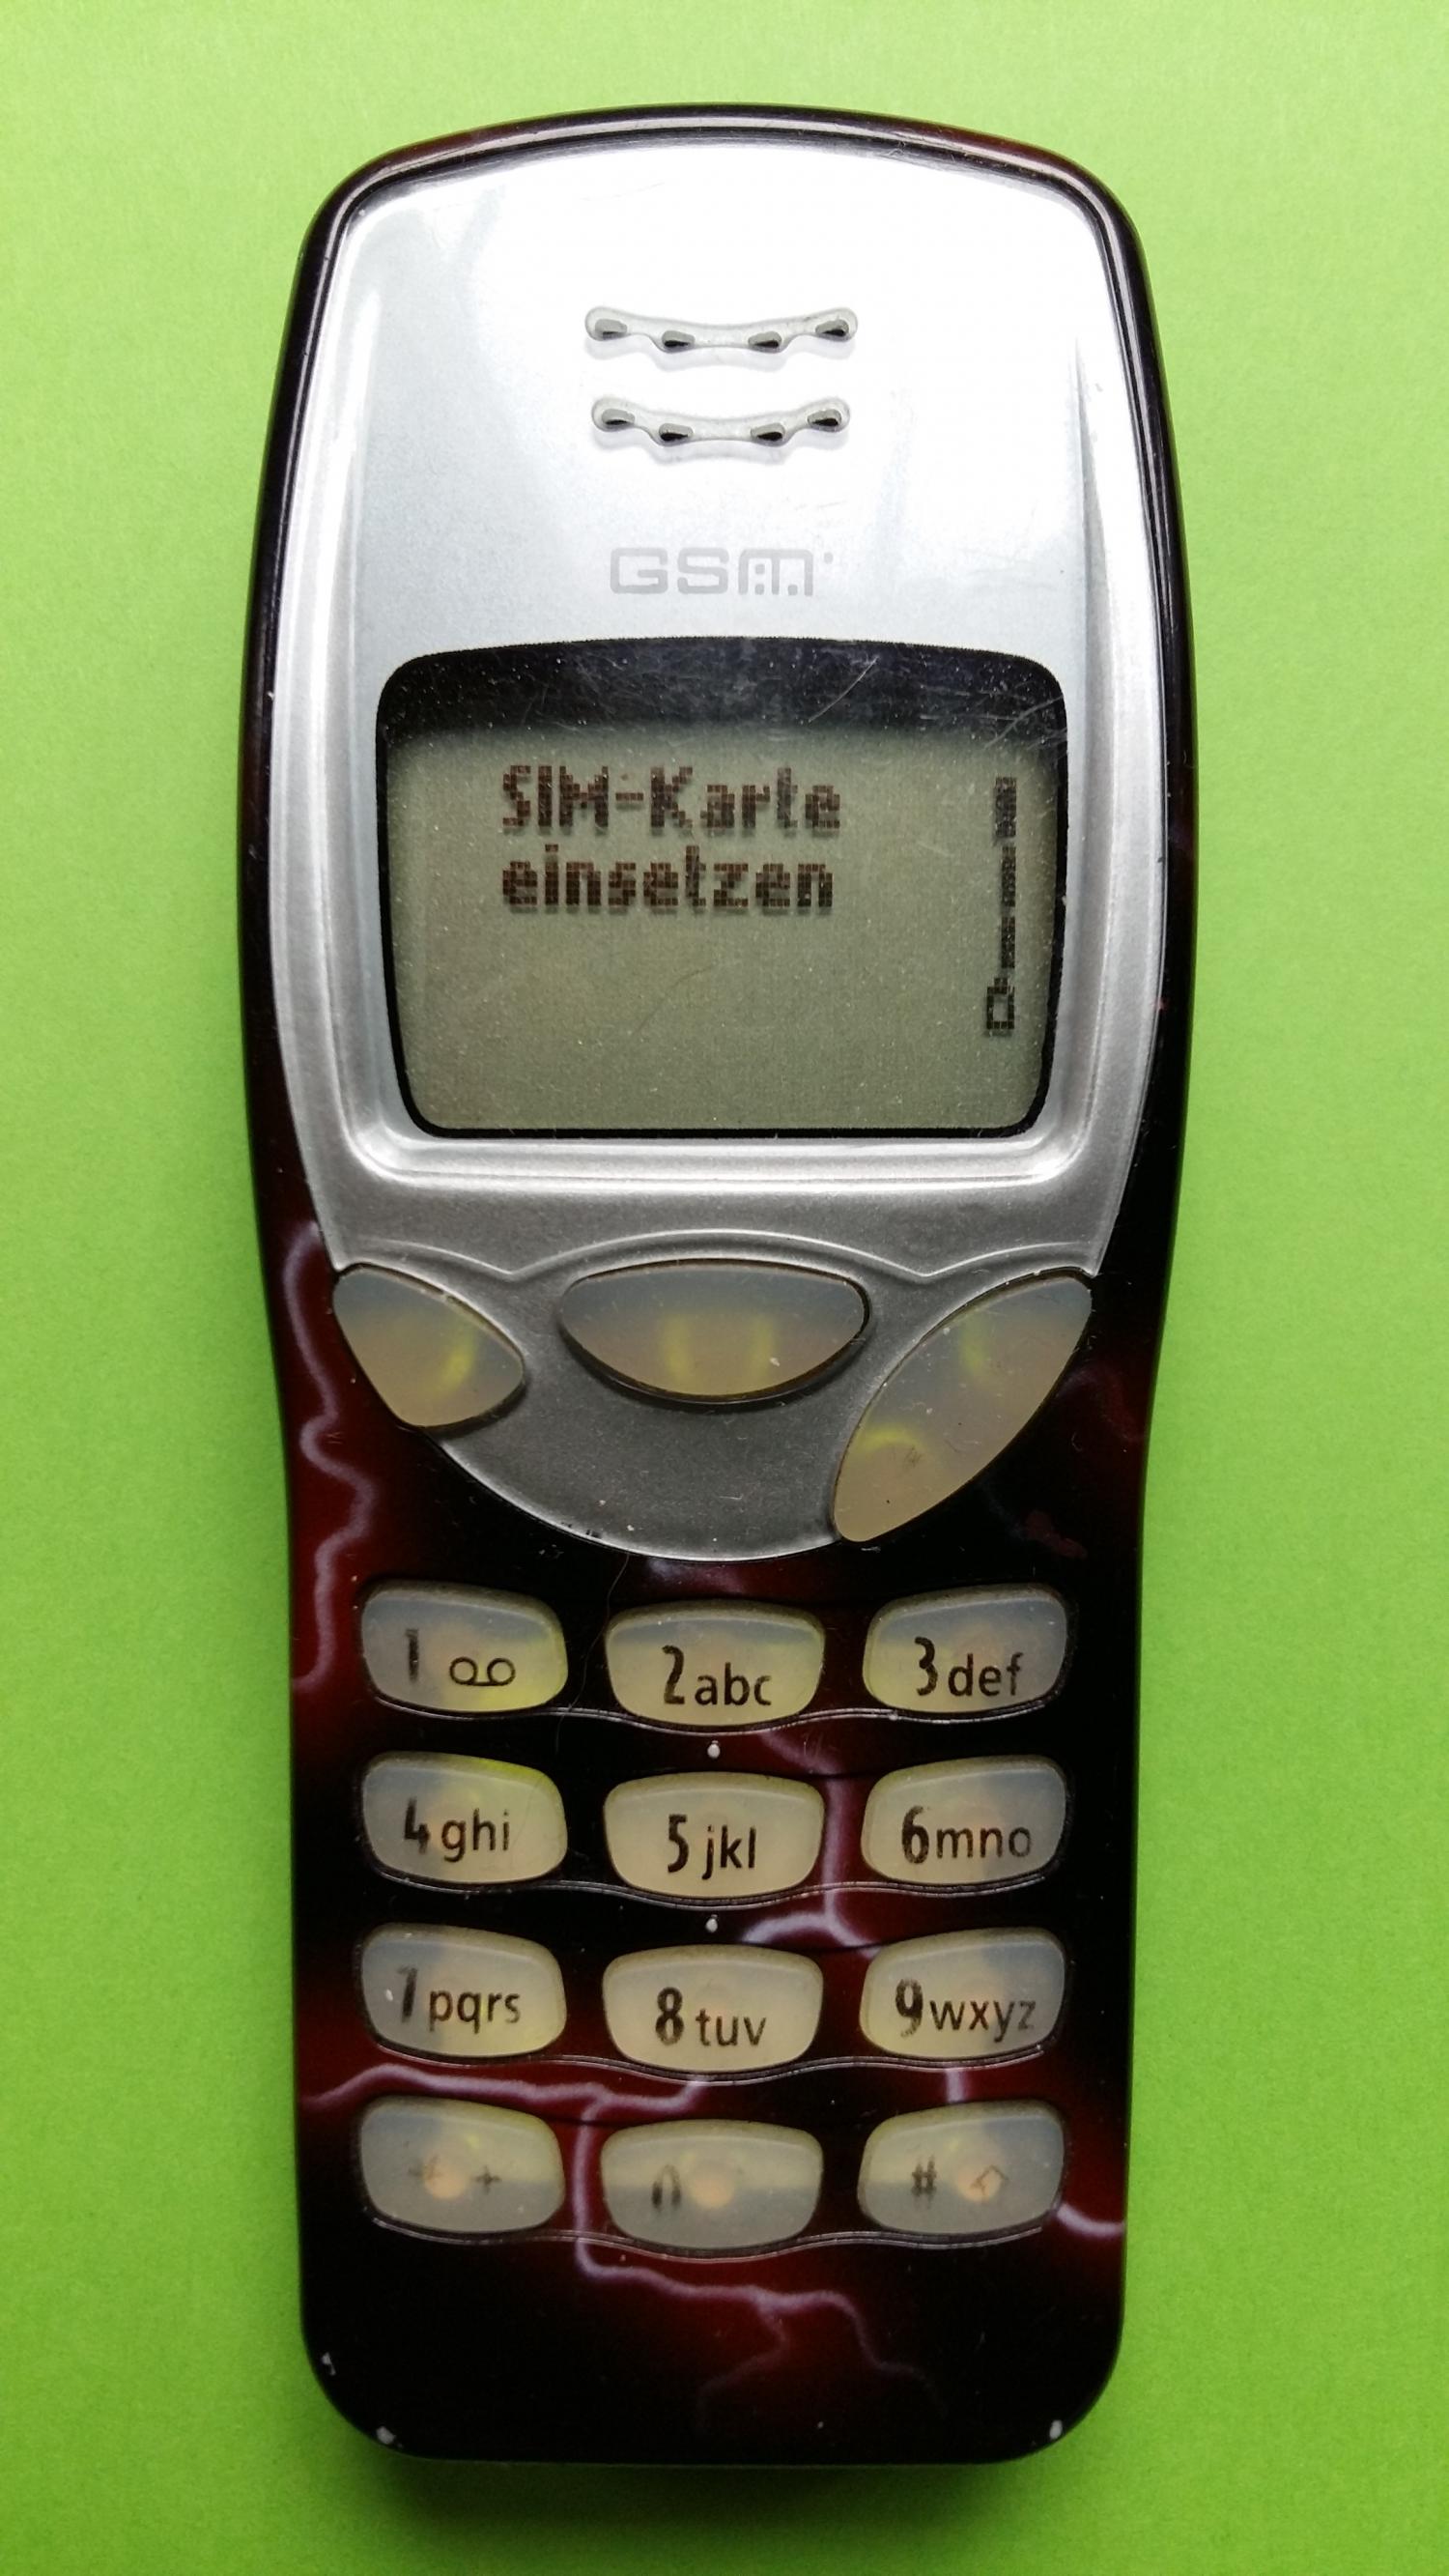 image-7303189-Nokia 3210 (20)1.jpg